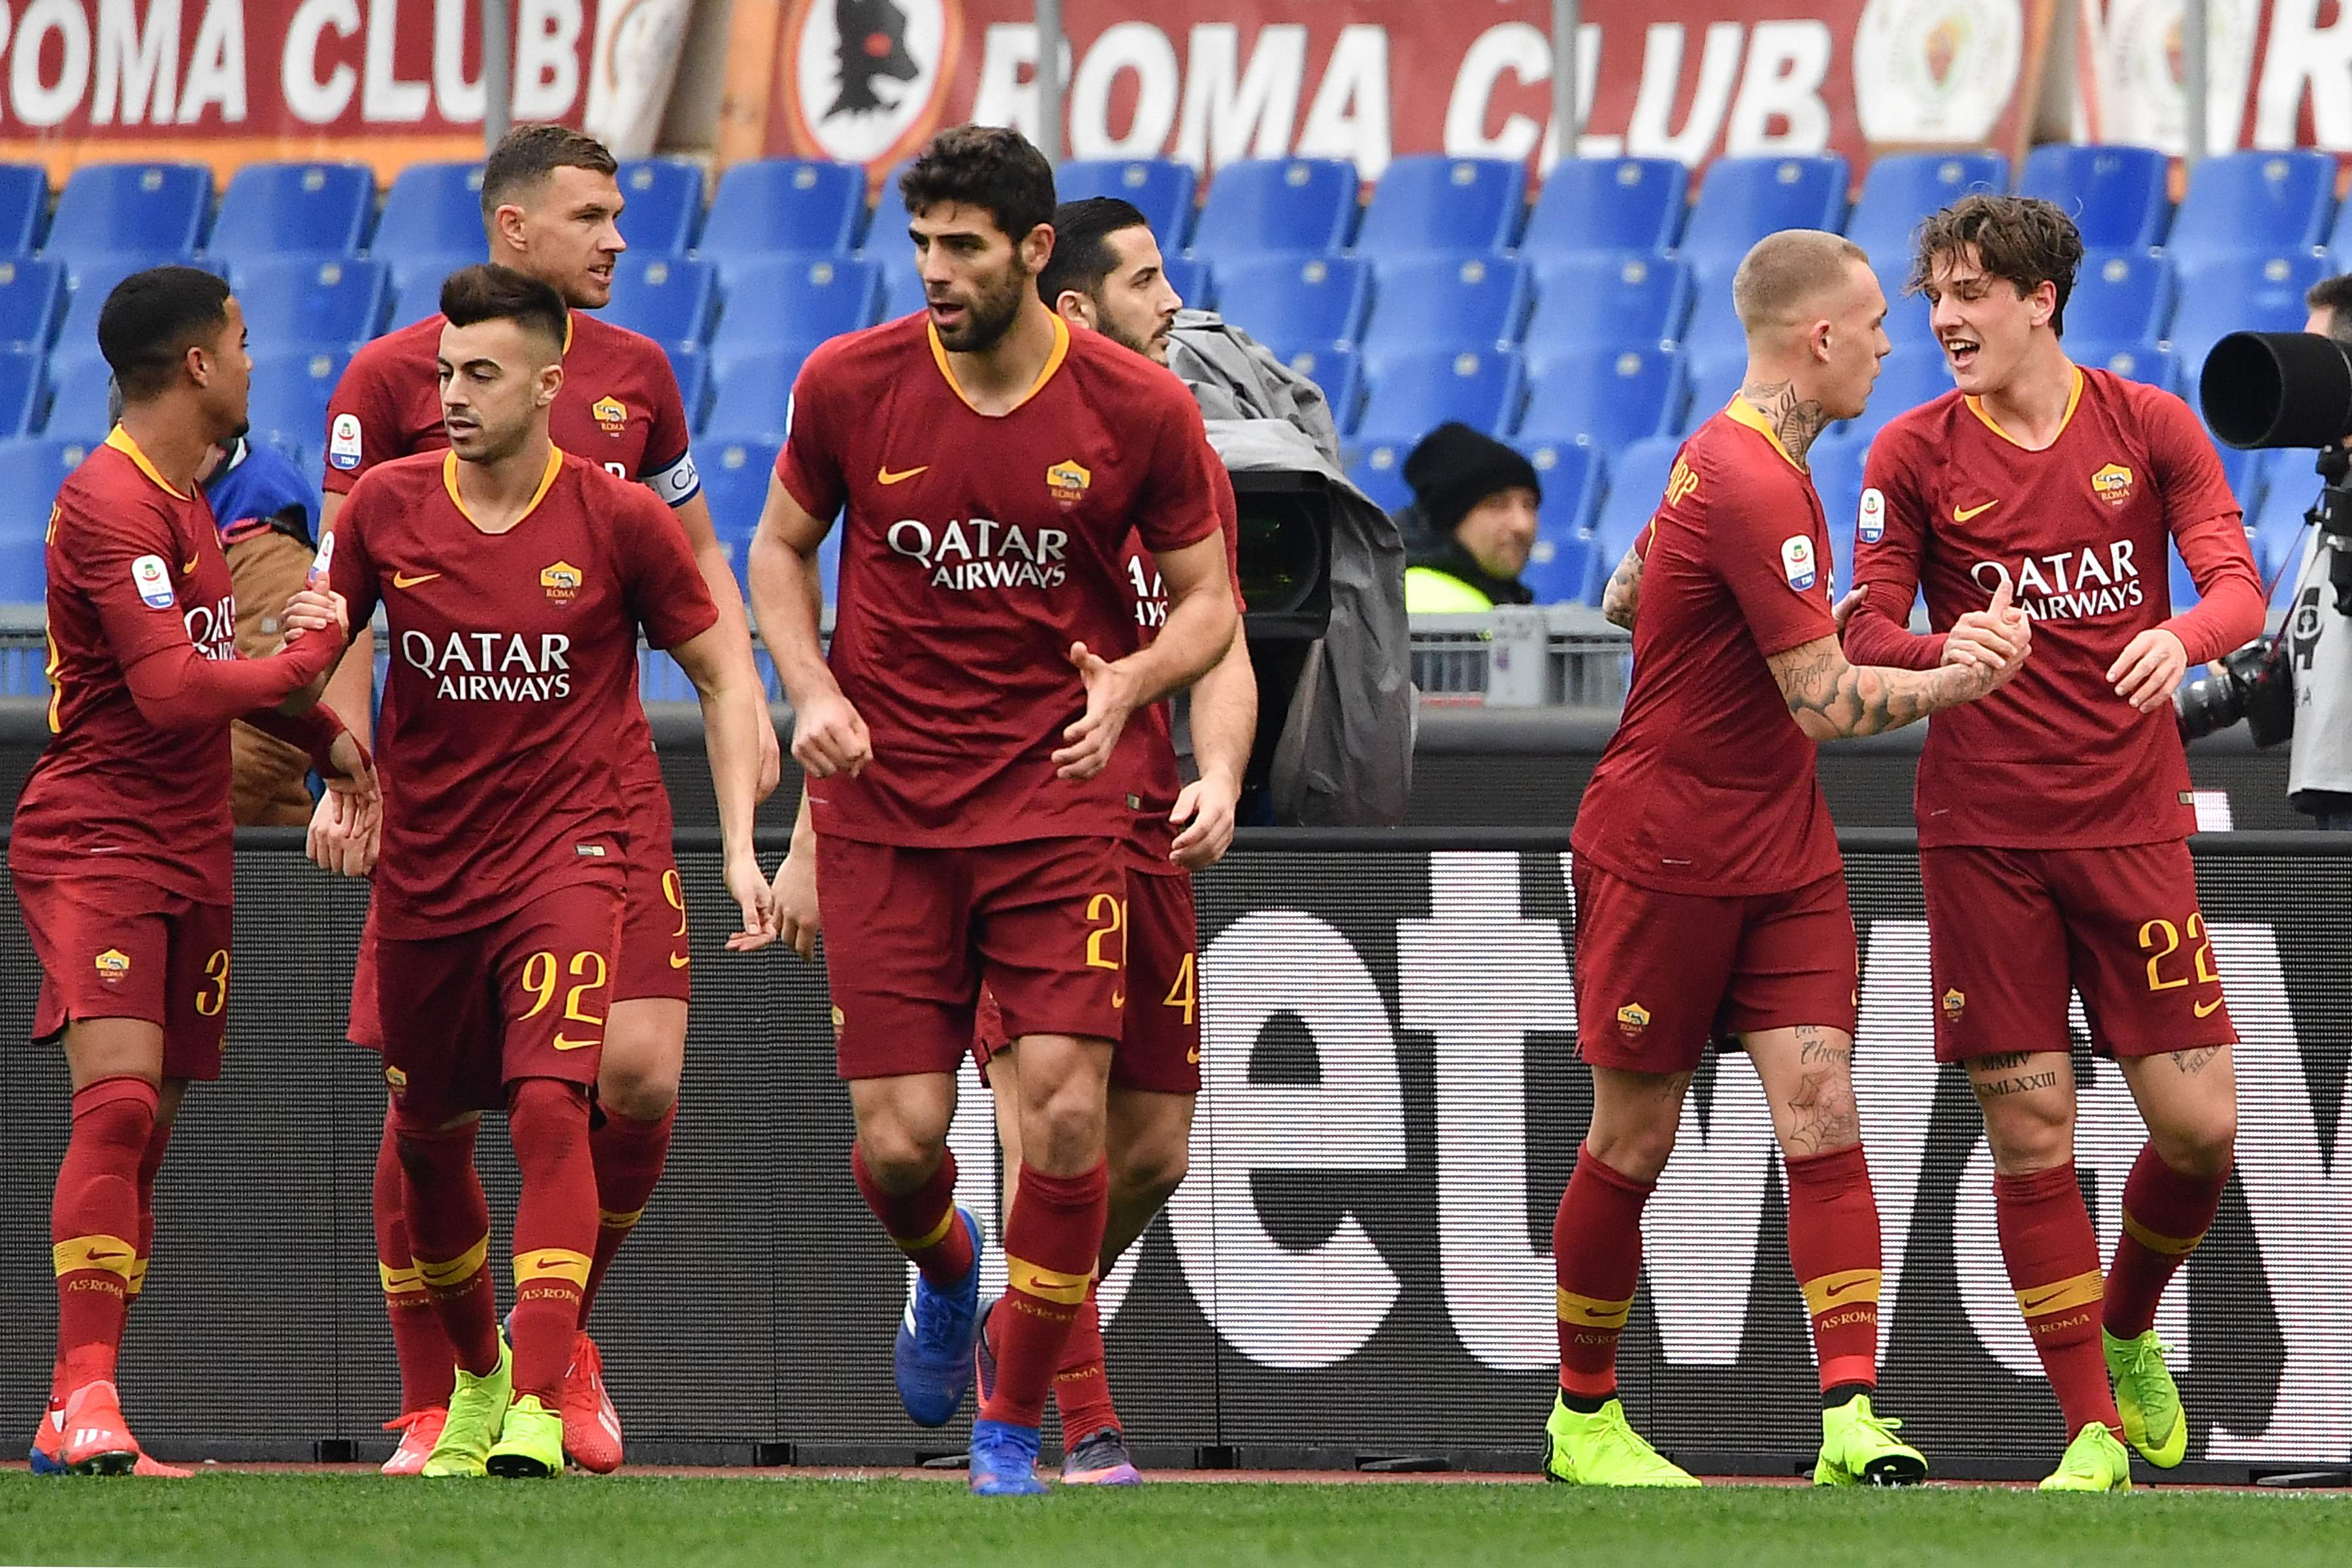 Los jugadores de la Roma festejan en el partido de este sábado. (Foto Prensa Libre: AFP)